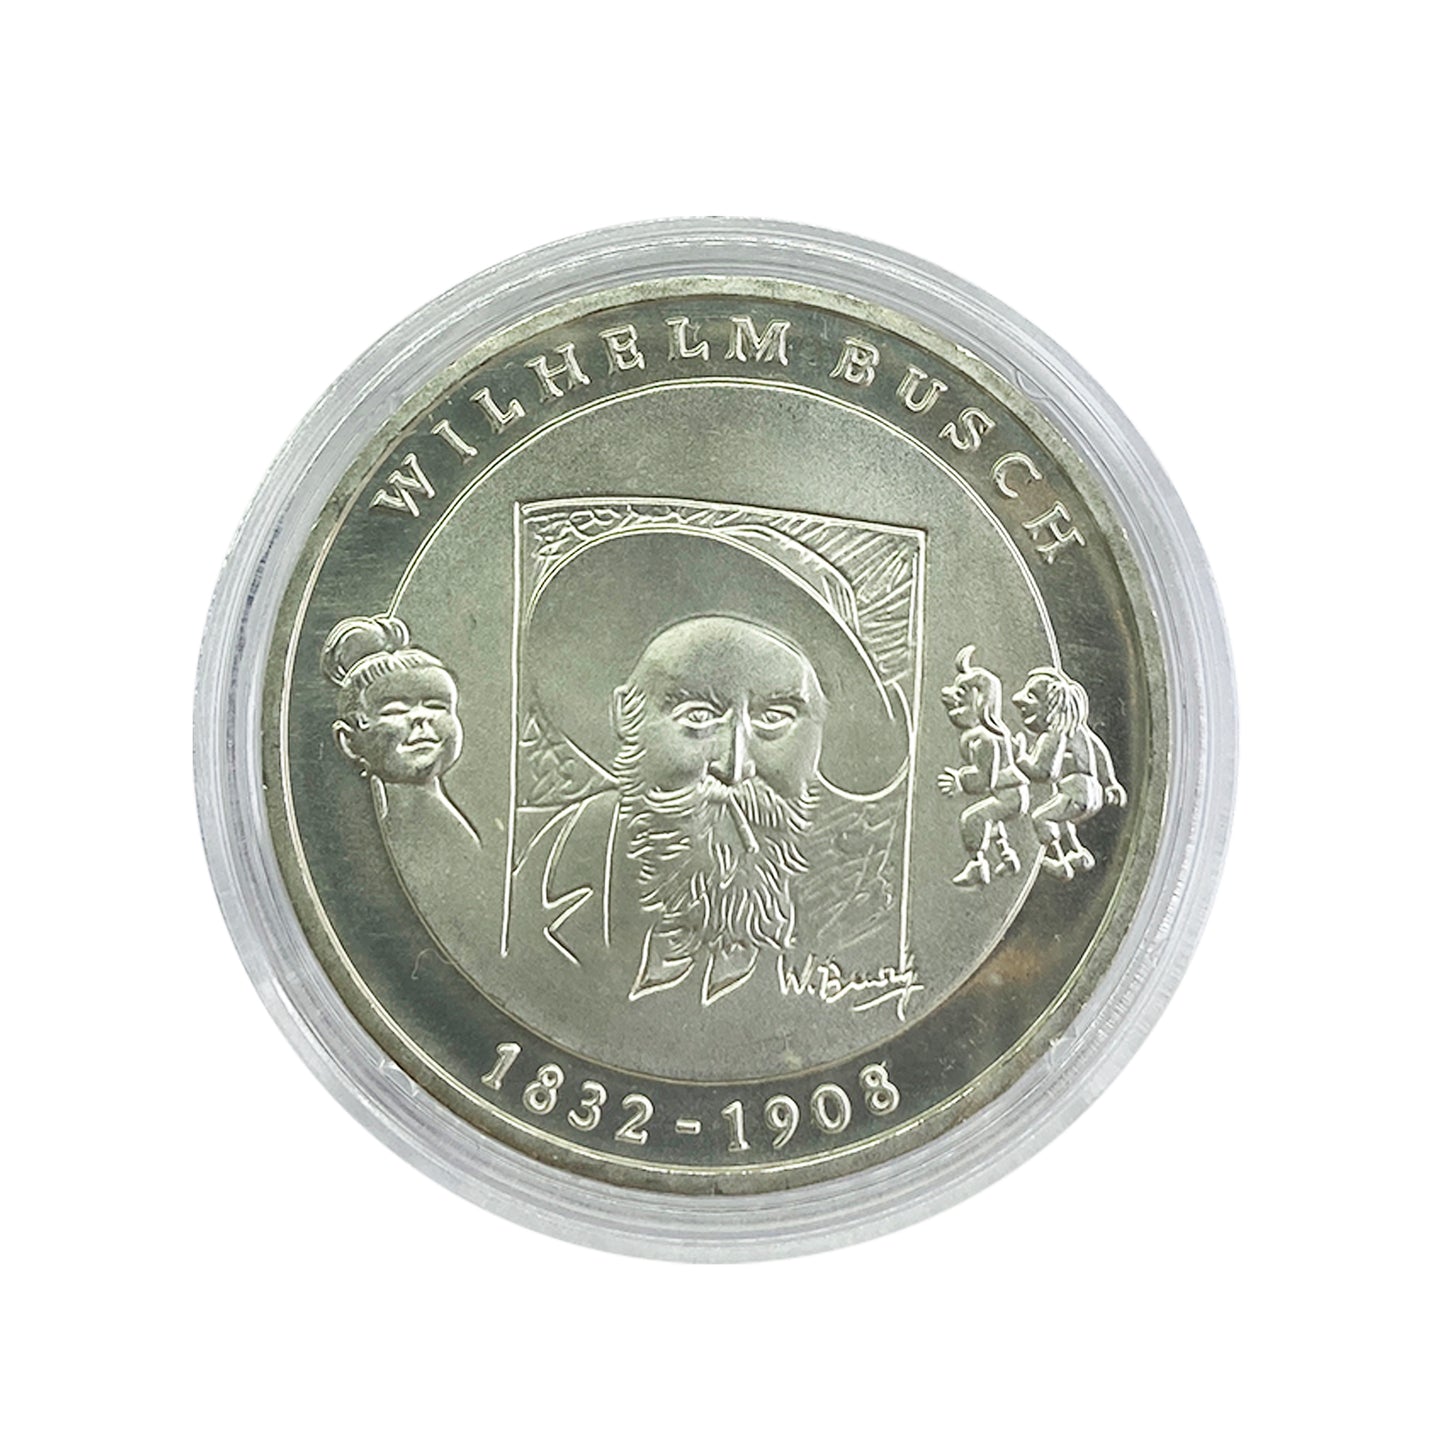 Alemania - Moneda 10 euros plata 2007 - Wilhelm Busch